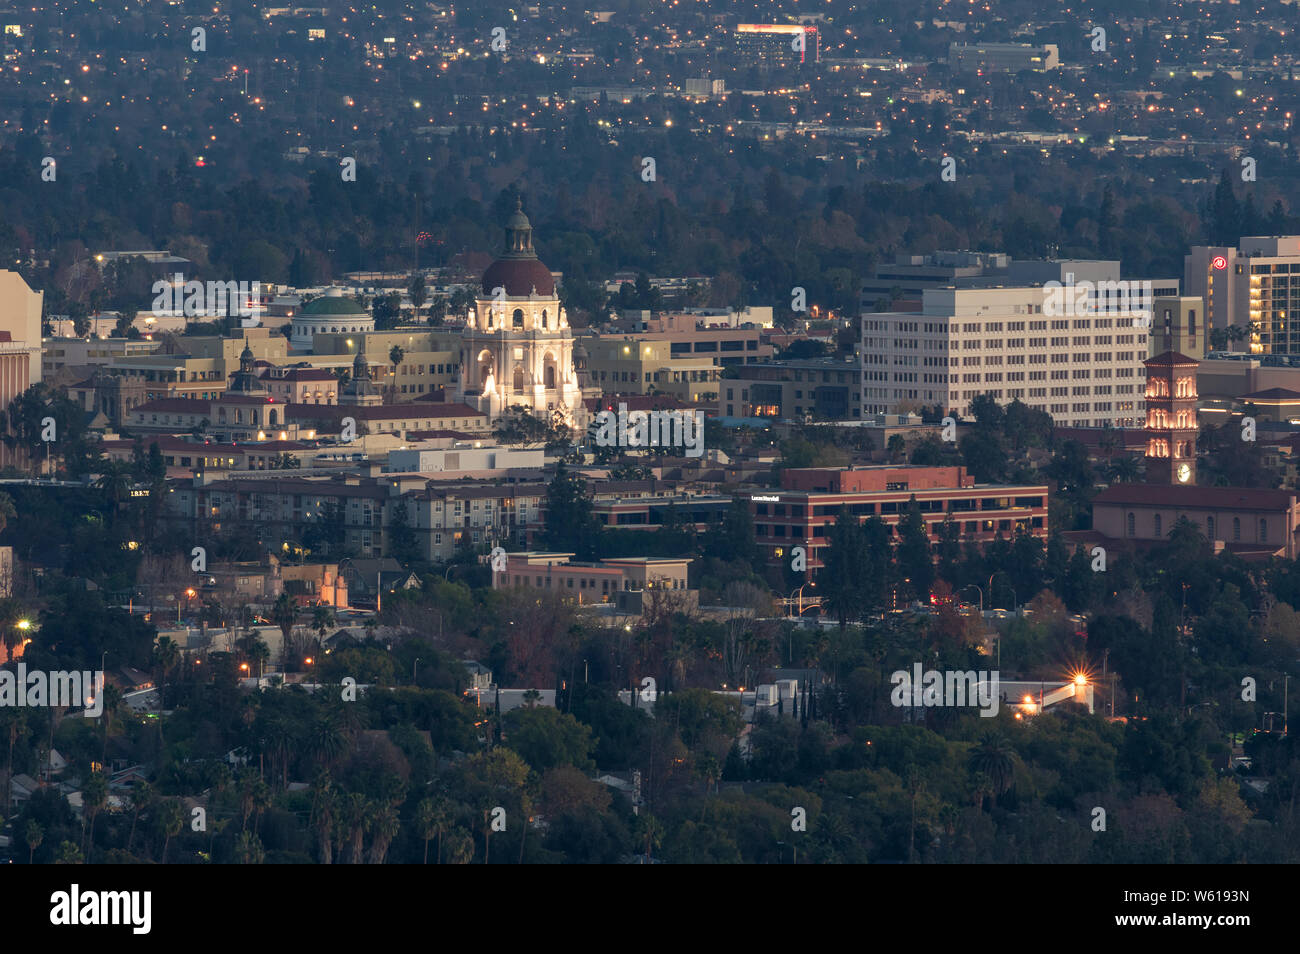 Vista dall'alto di Pasadena in California. Il Landmark Pasadena City Hall e Sant'Andrea Chiesa cattolica sono mostrati nella terra di mezzo. Foto Stock